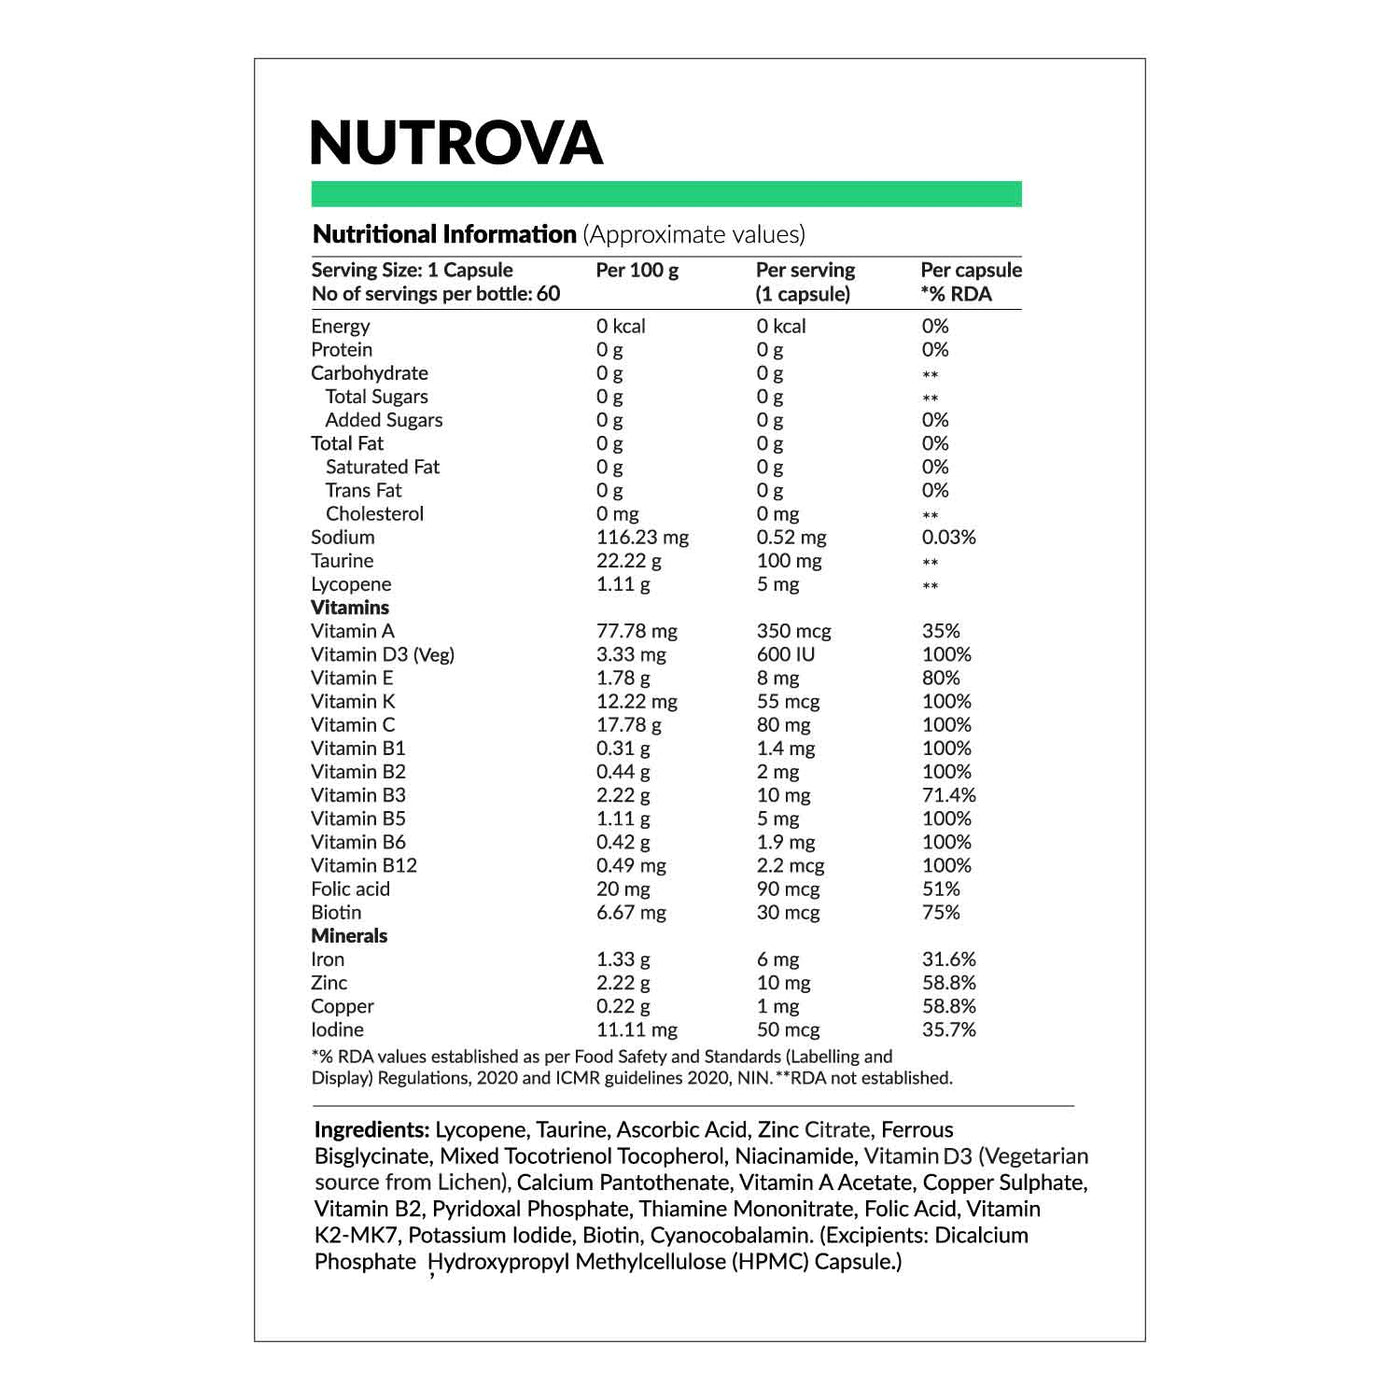 Nutrova Multivitamin For Vegans